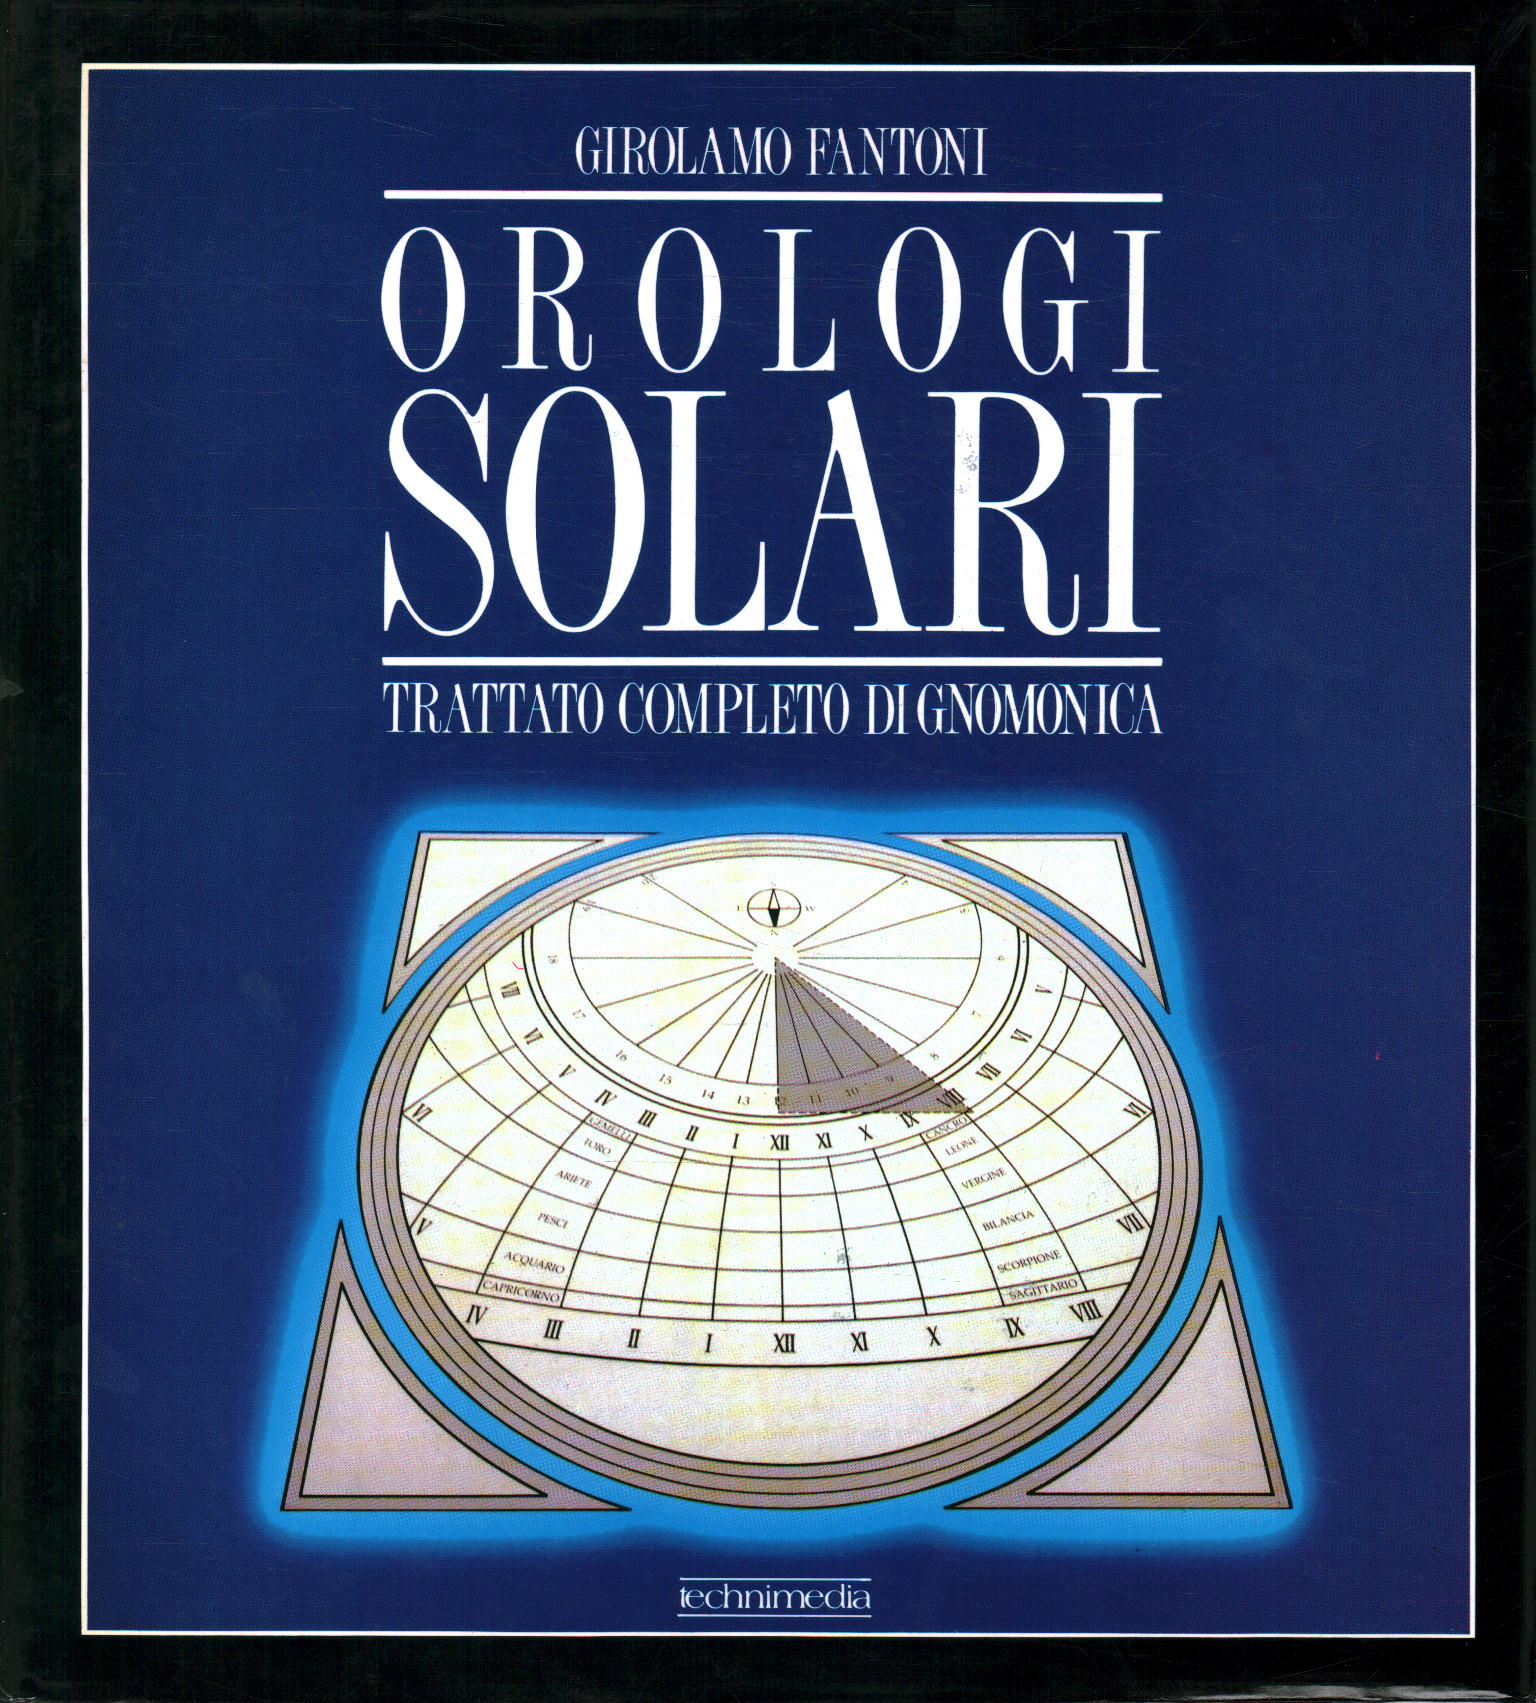 Orologi solari. Storia - Teoria - Prat